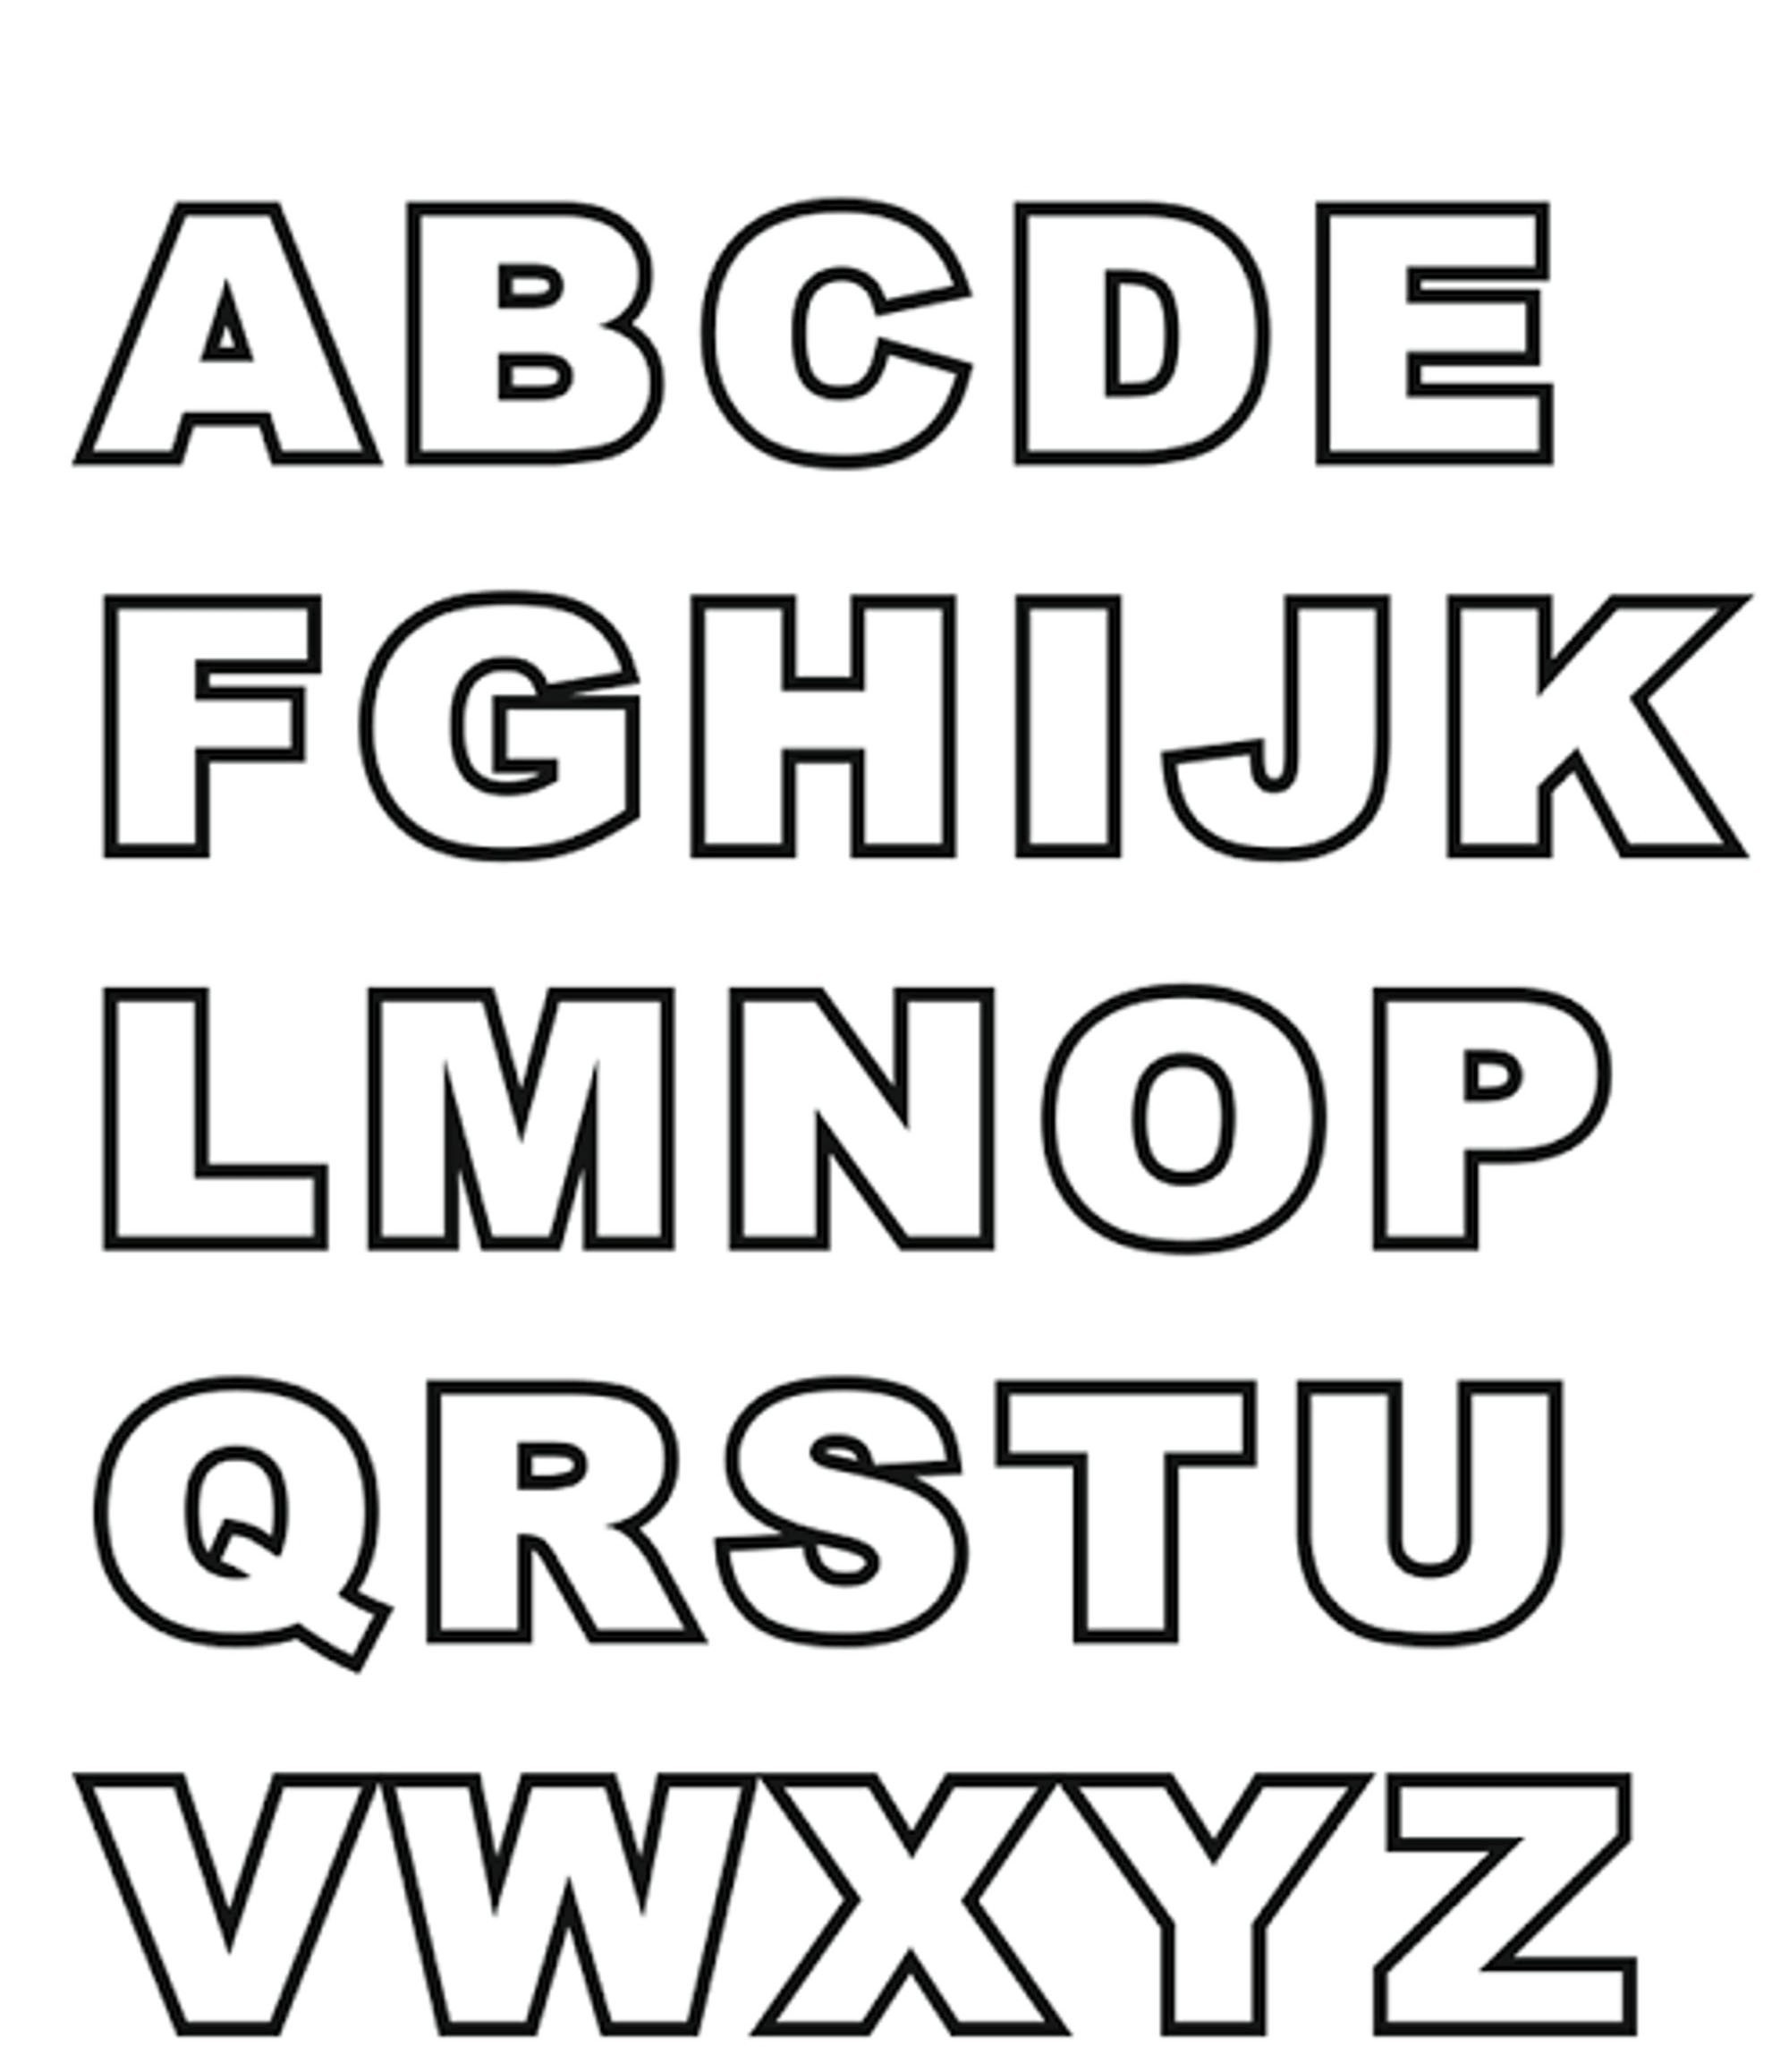 Large Abc Letter Templates Fresh Stencils Unique Free